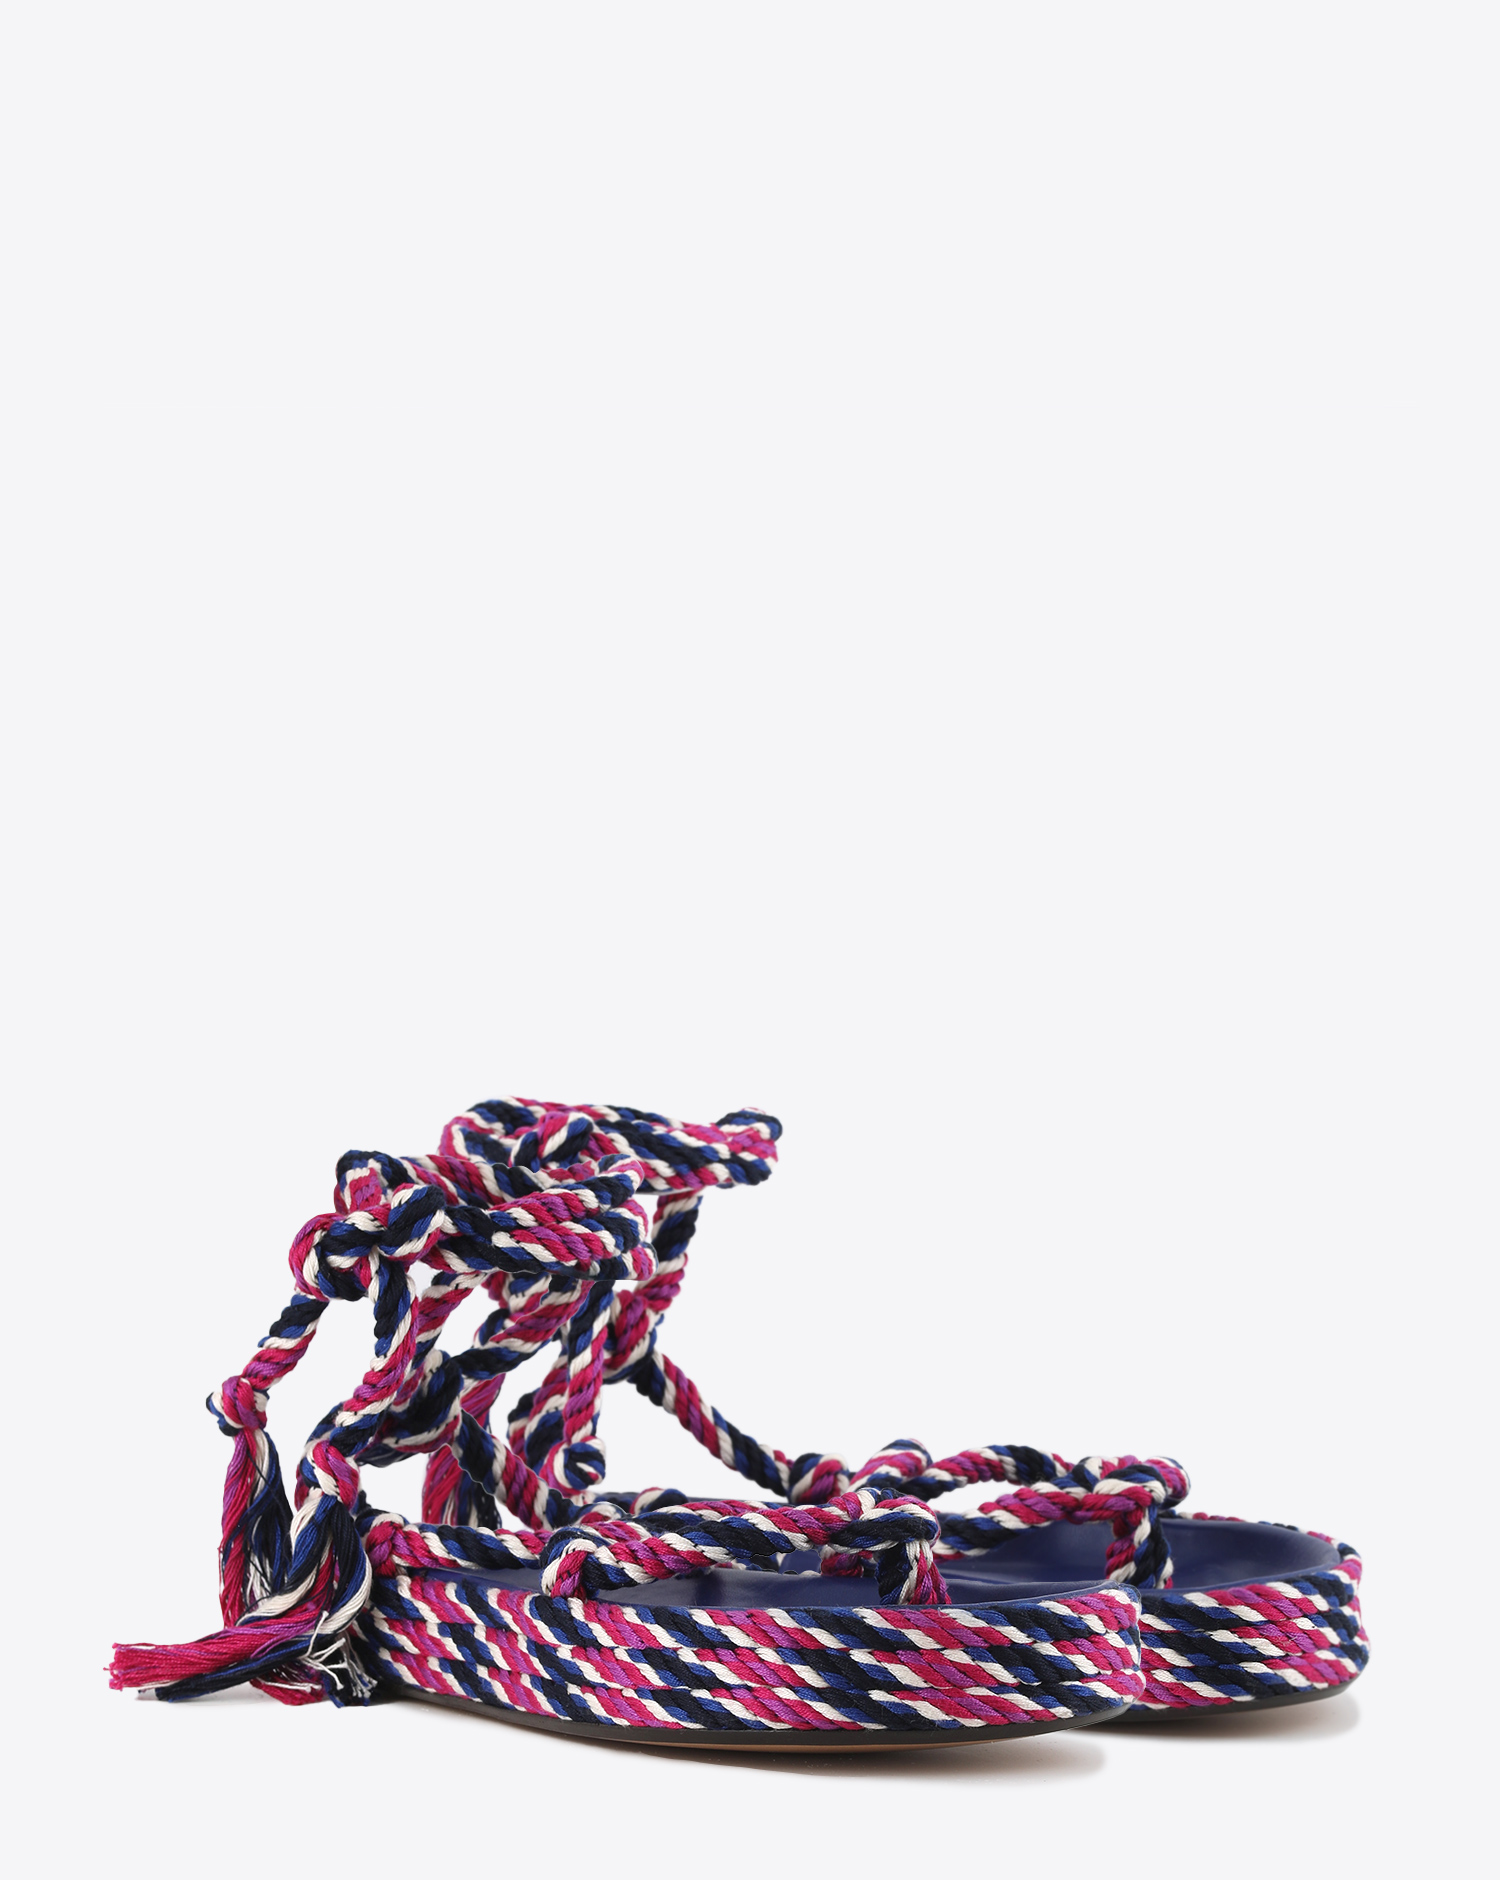 Sandales cordes lien cheville coloris fuchsia Isabel Marant. 